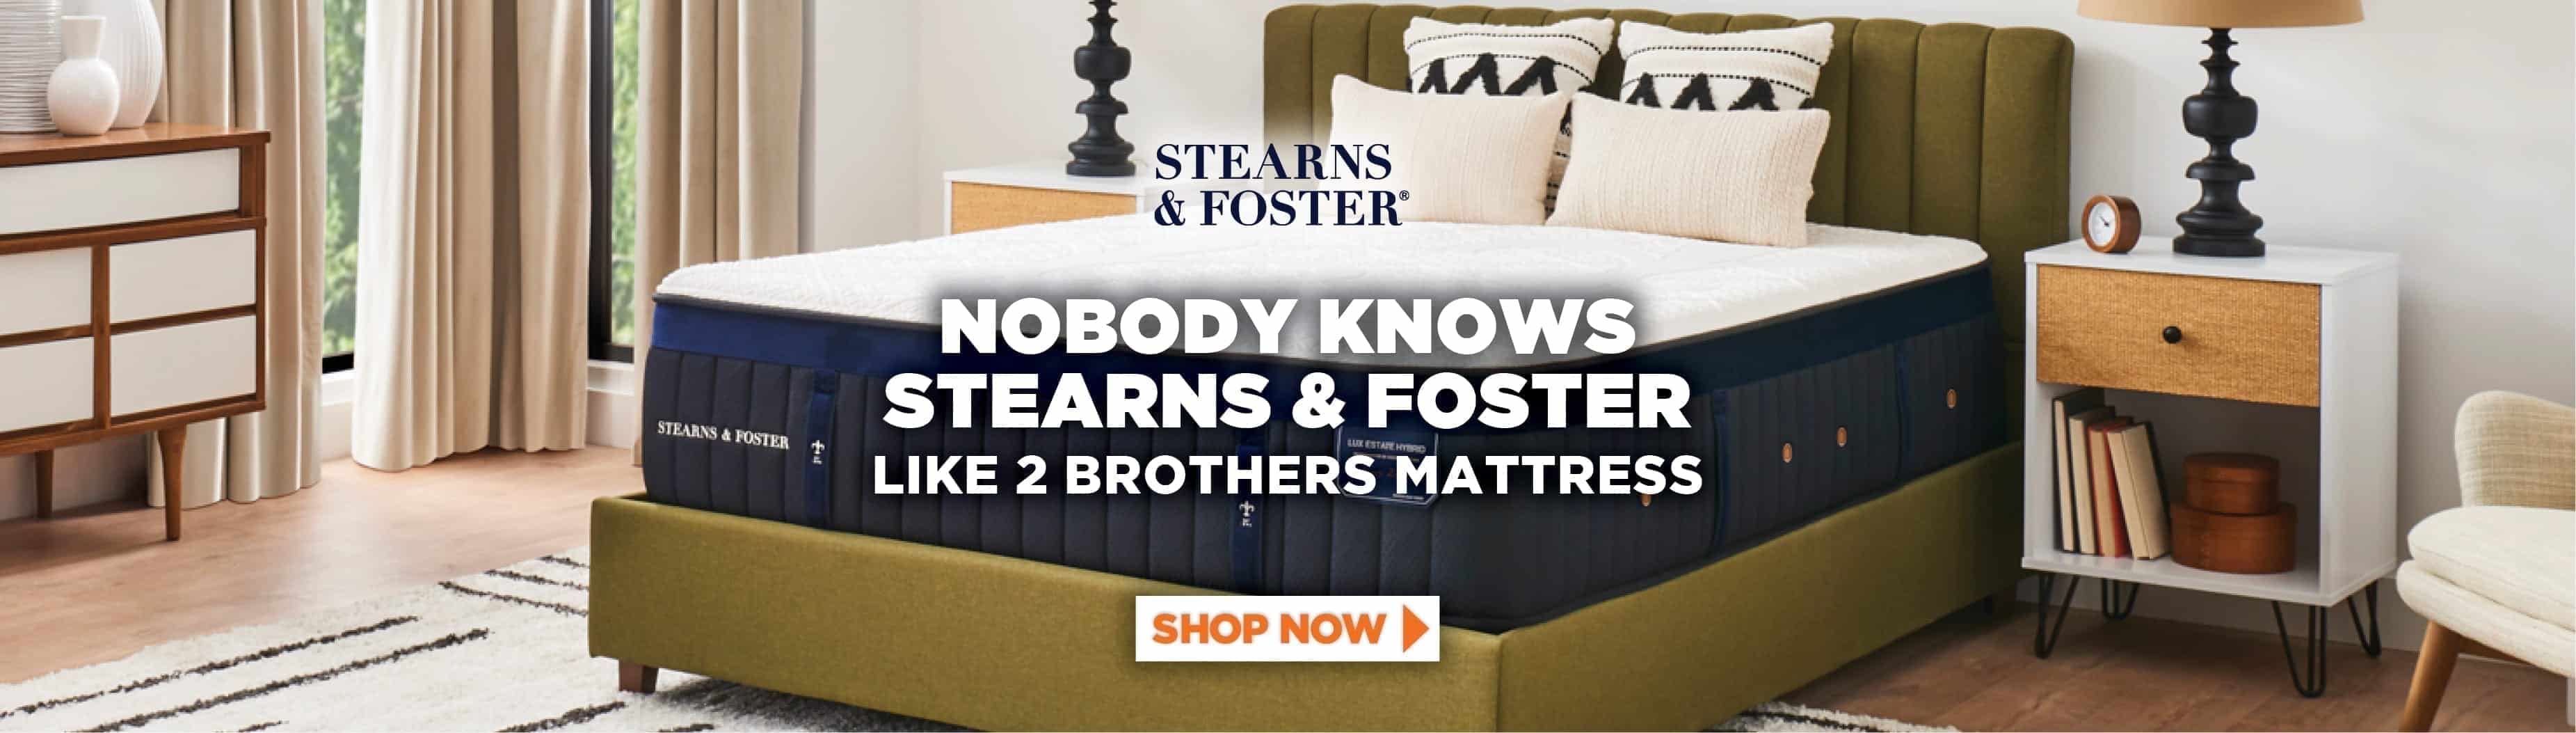 stearns & foster mattress